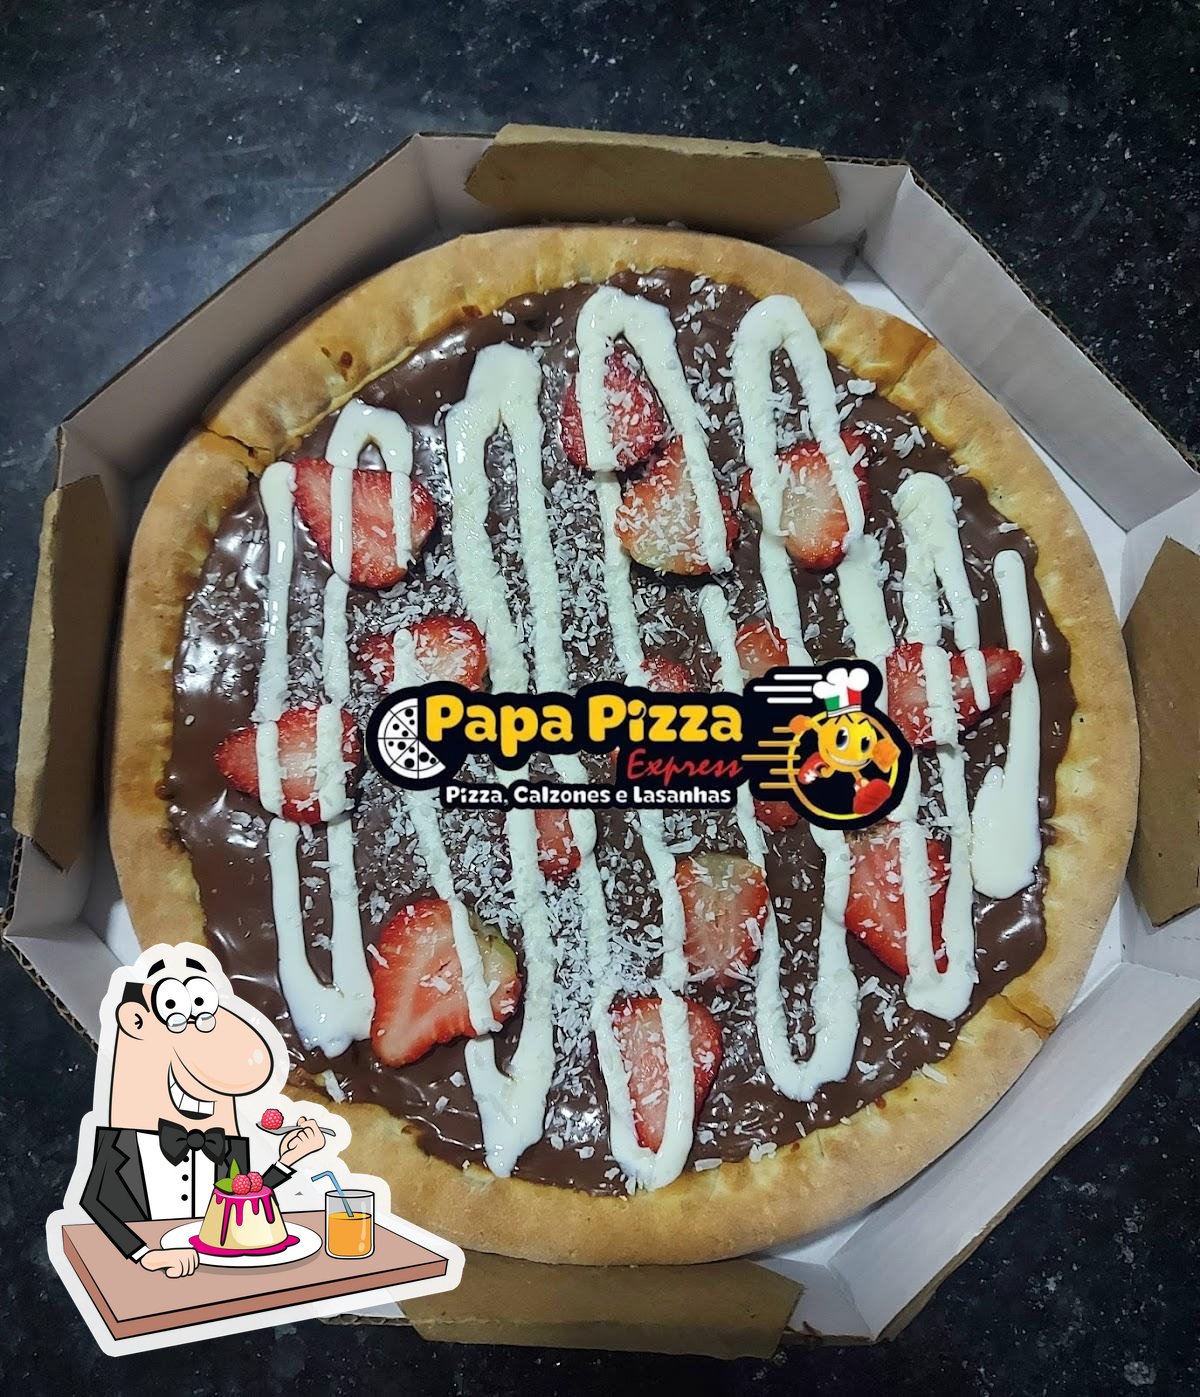 Papa Pizza Express em Fazenda Rio Grande-PR - Pizzarias Perto de Mim